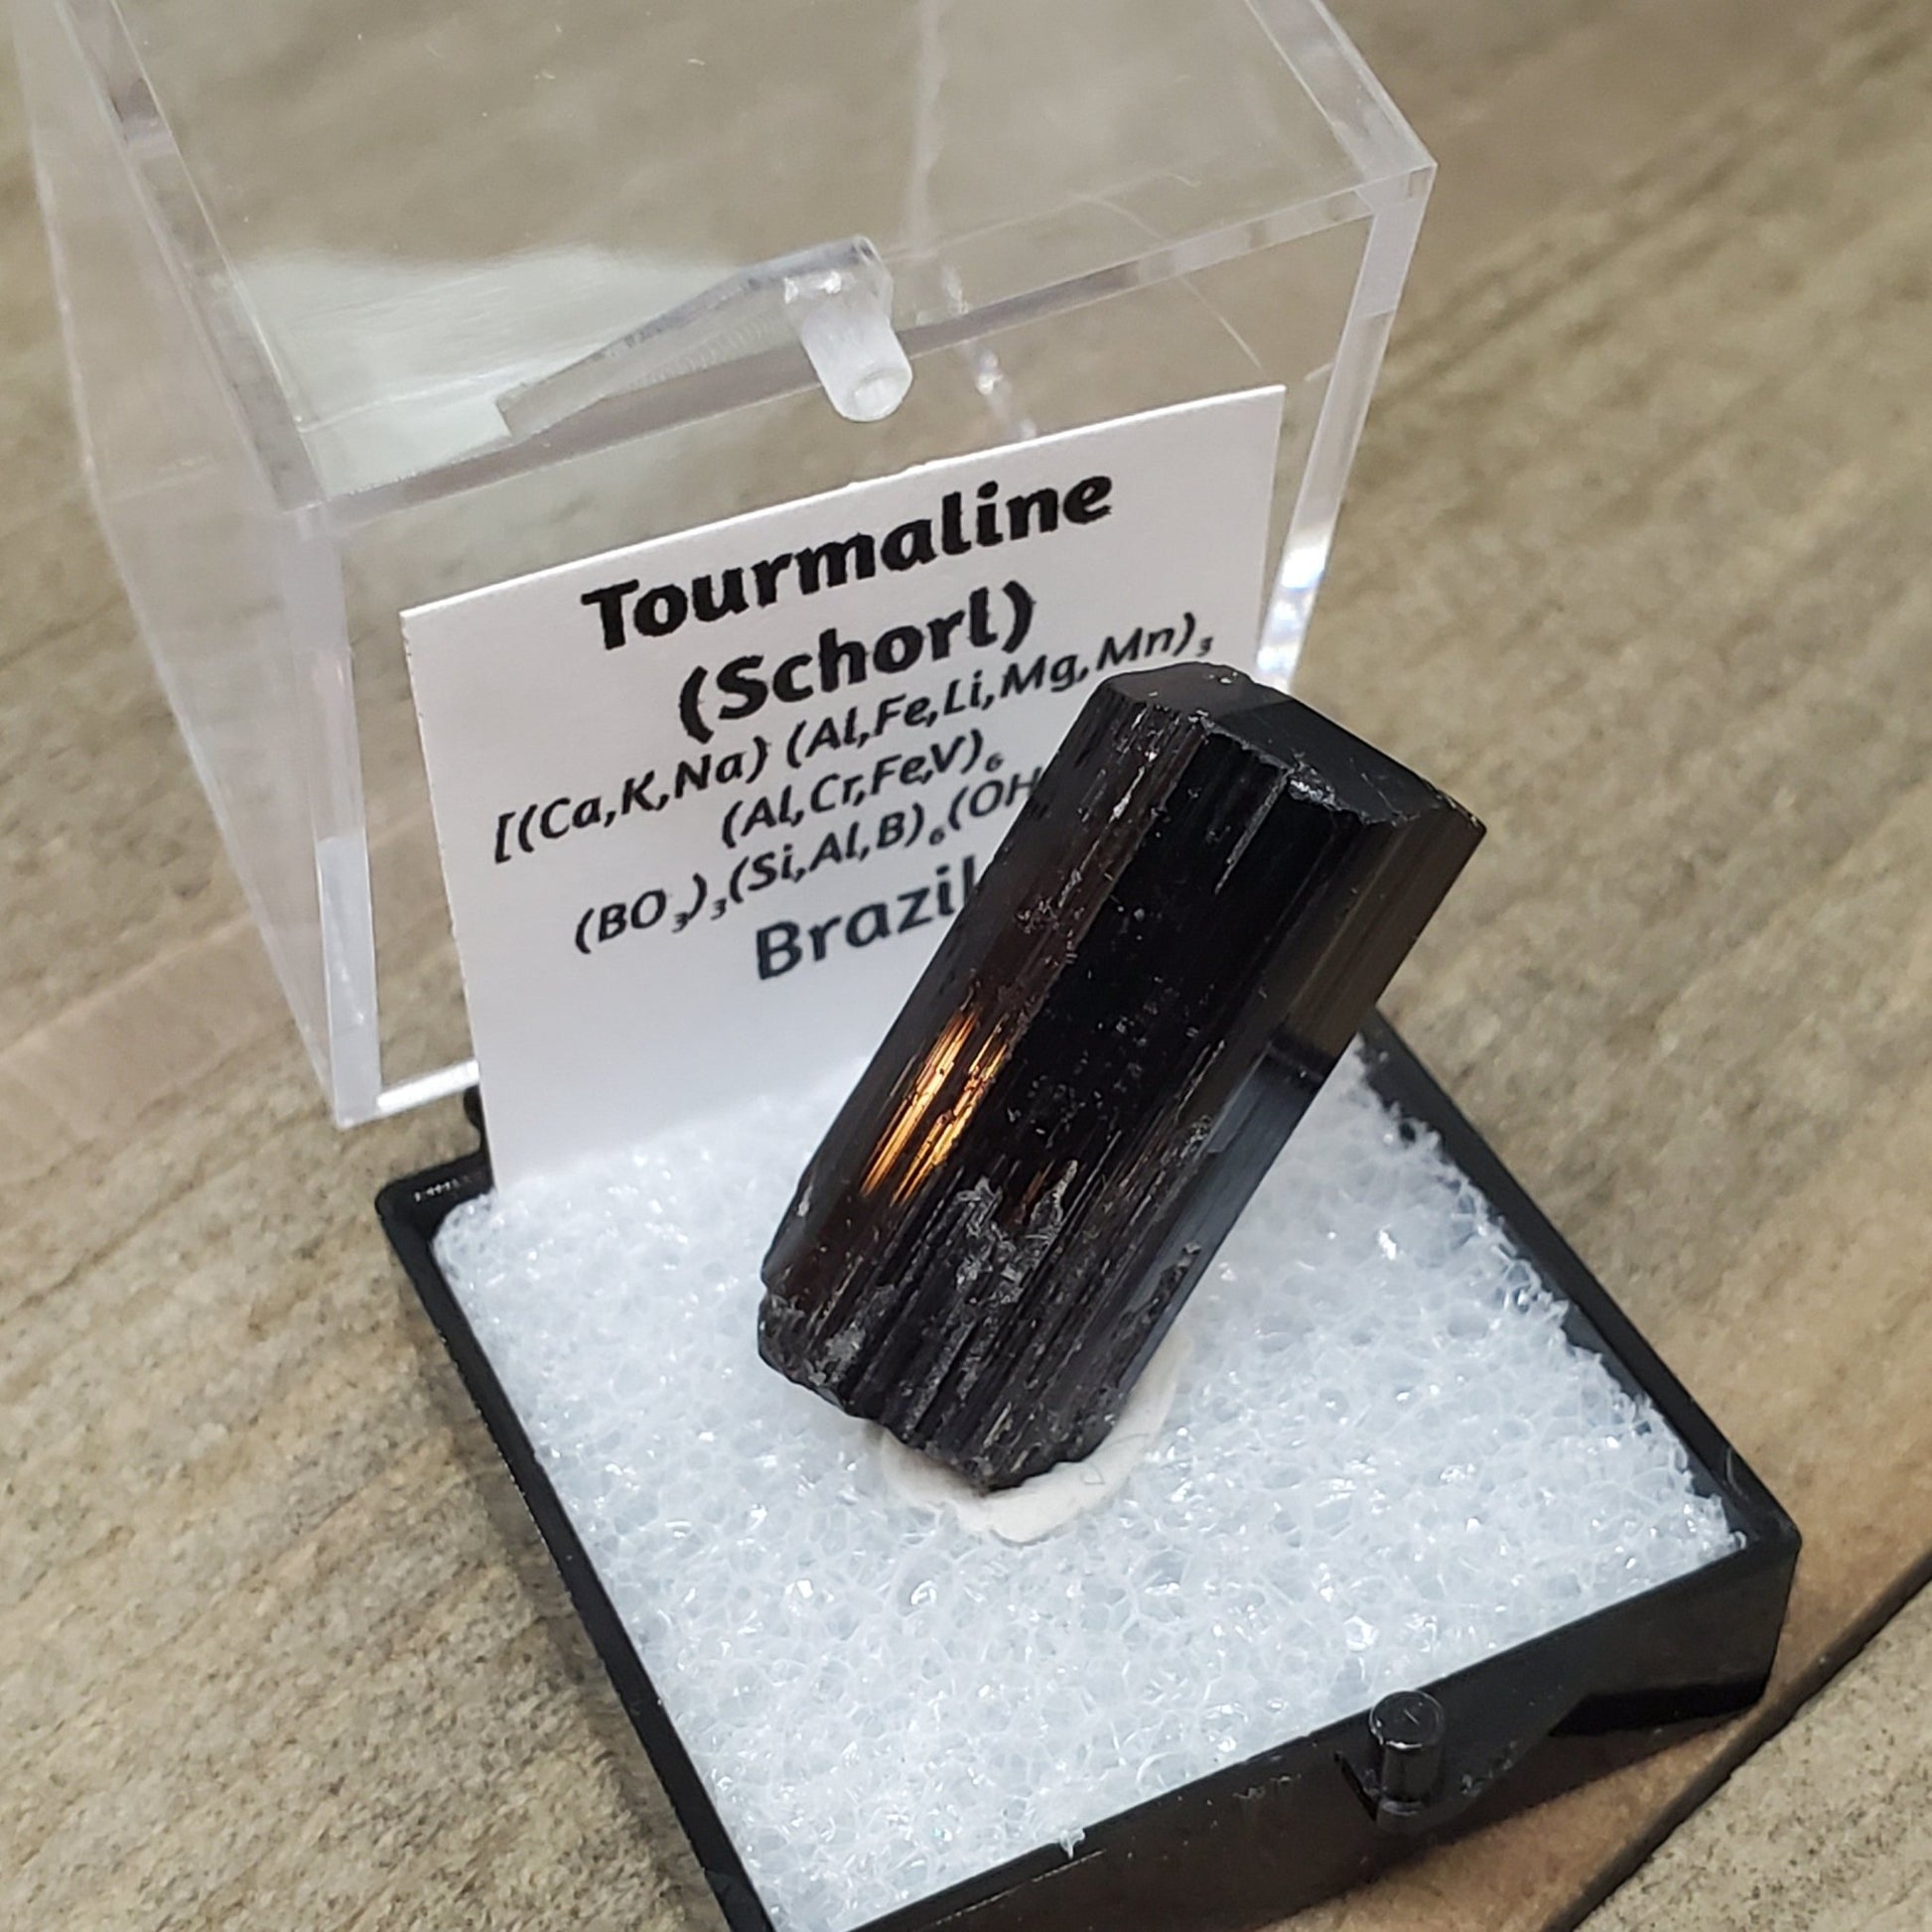 Black Tourmaline (Schorl) Specimen #2 - Earth & Hammer